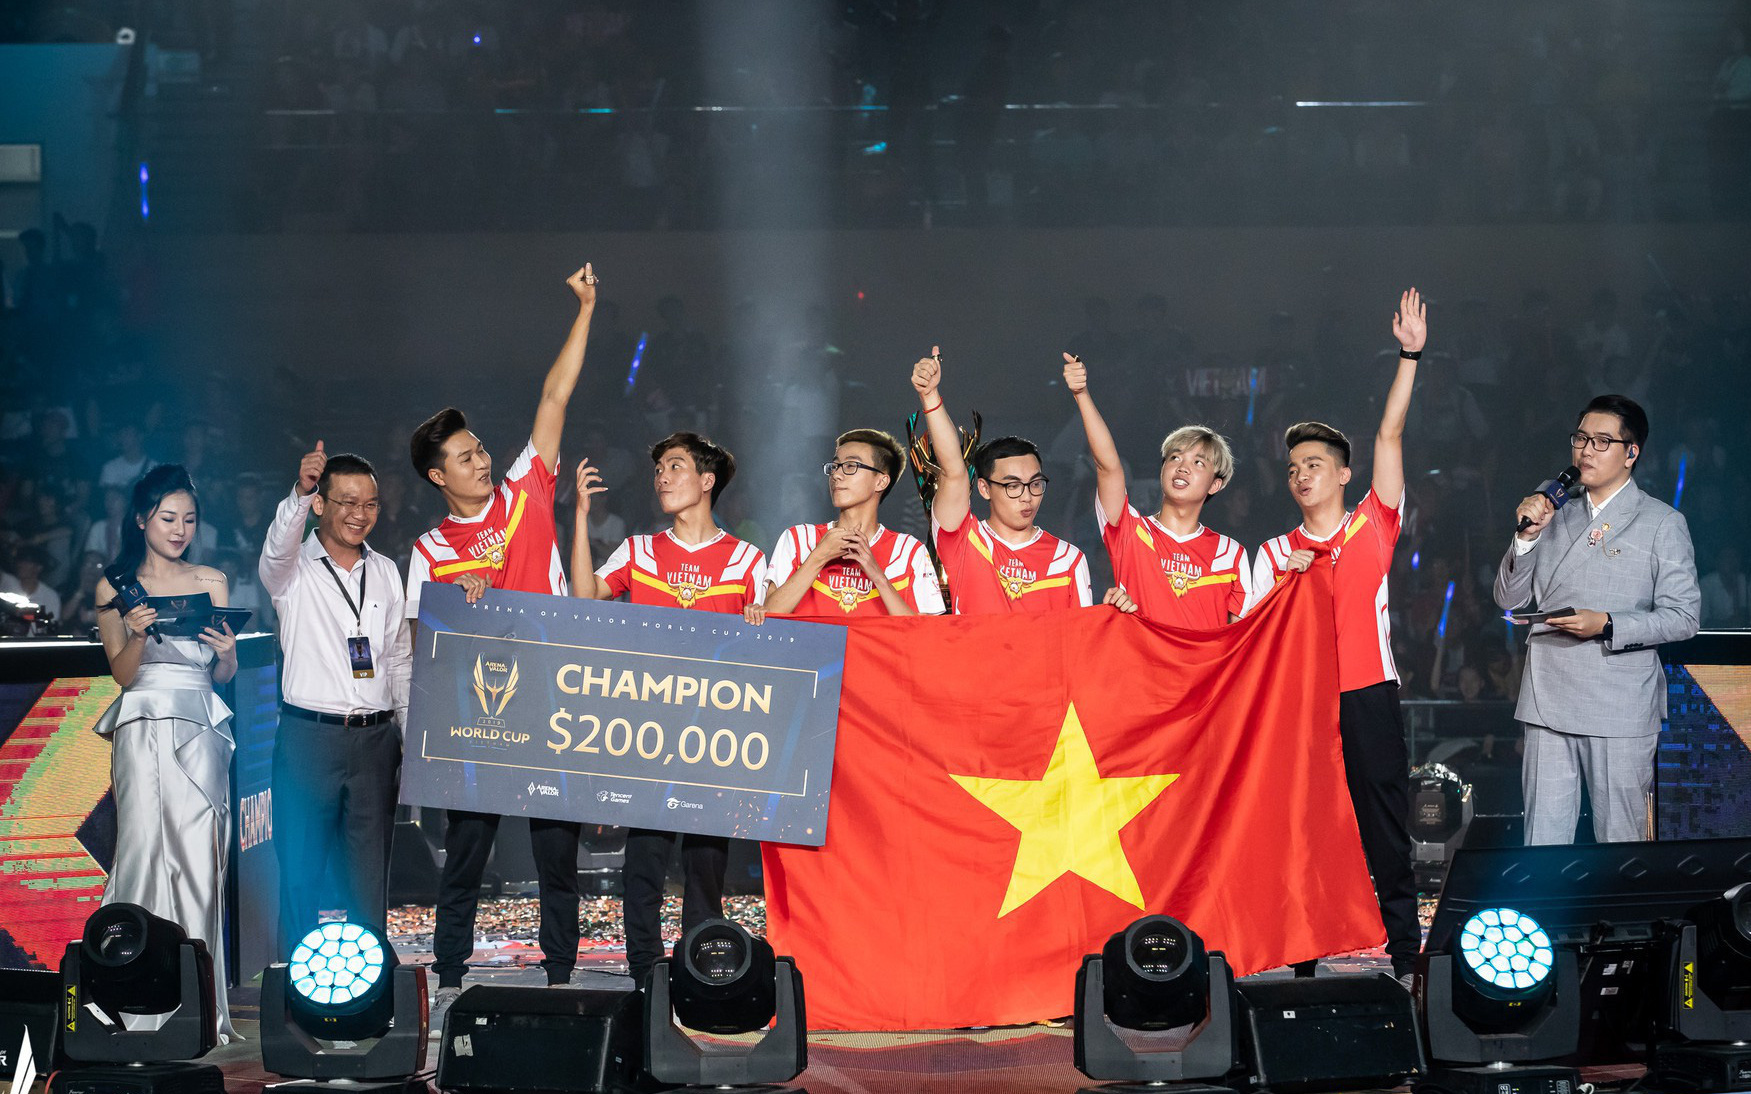 Đại hội Thể thao Trong nhà và Võ thuật châu Á - AIMAG 2021 công bố các môn thi đấu, Việt Nam sáng cửa tranh huy chương